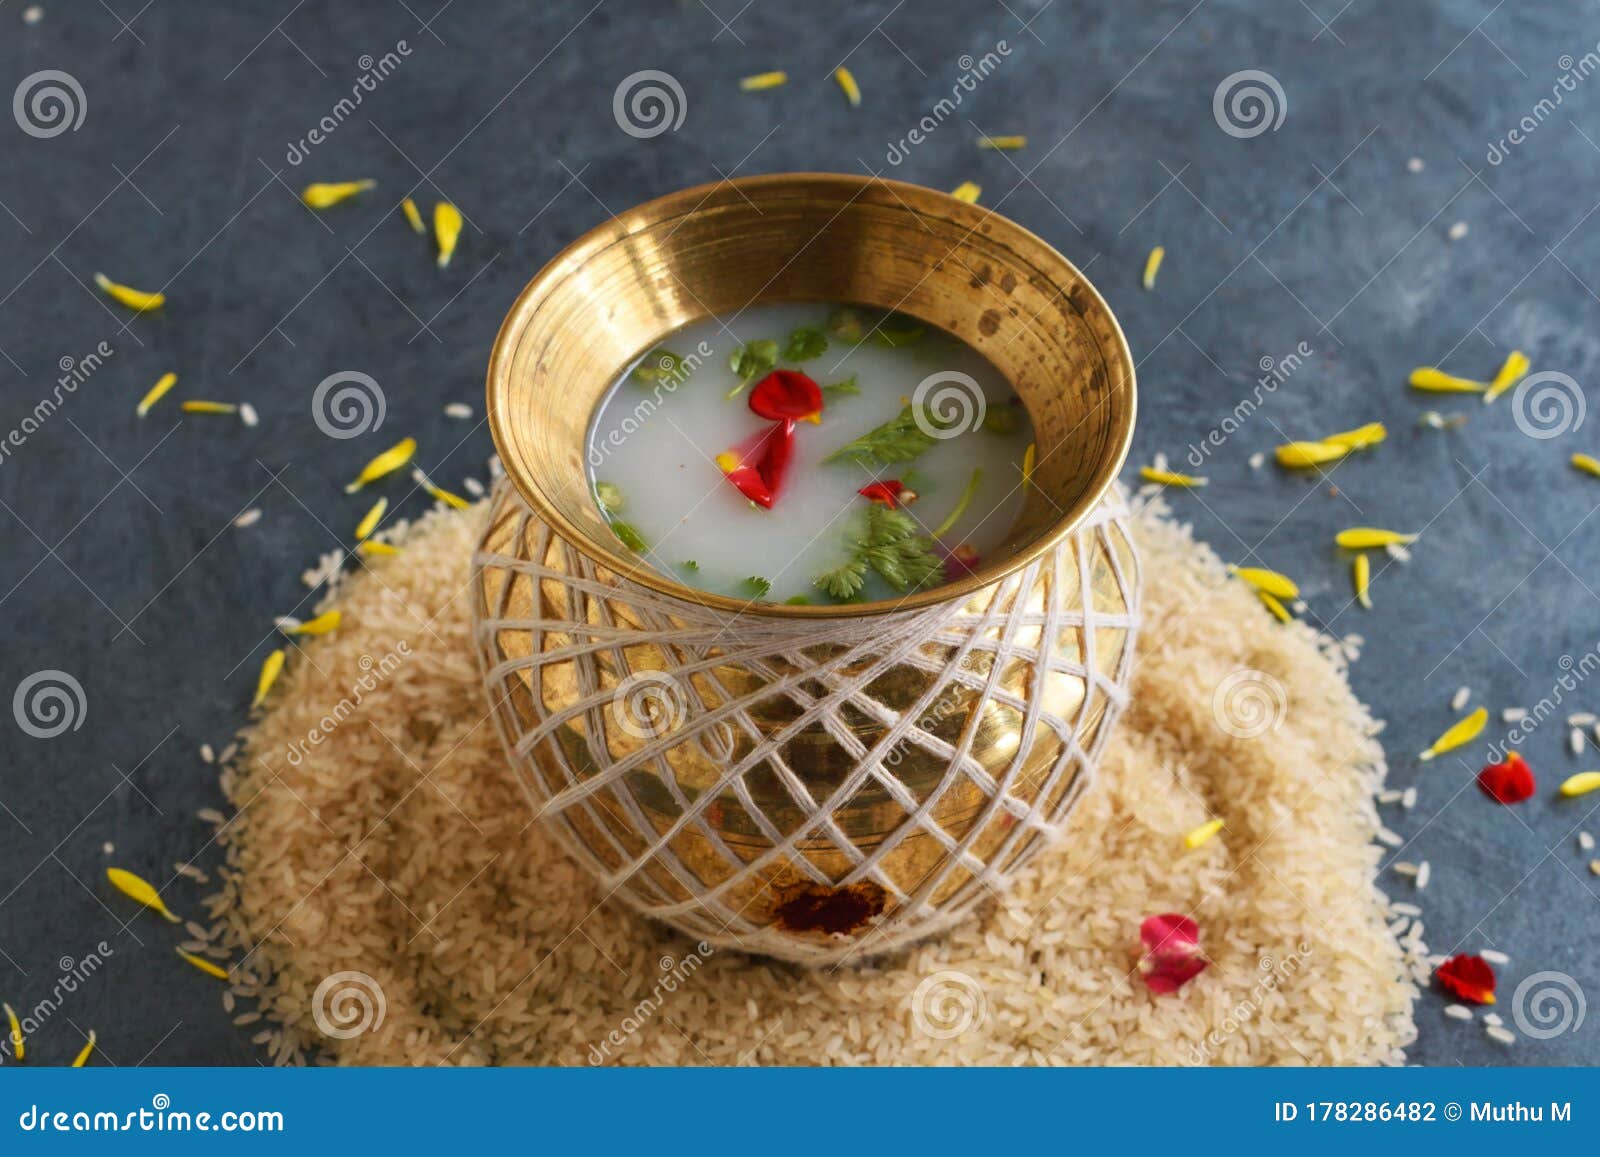 Traditional Kalash Also Know As Kalasam Made with Brass Pot Stock Photo -  Image of kalasha, beautiful: 178286482